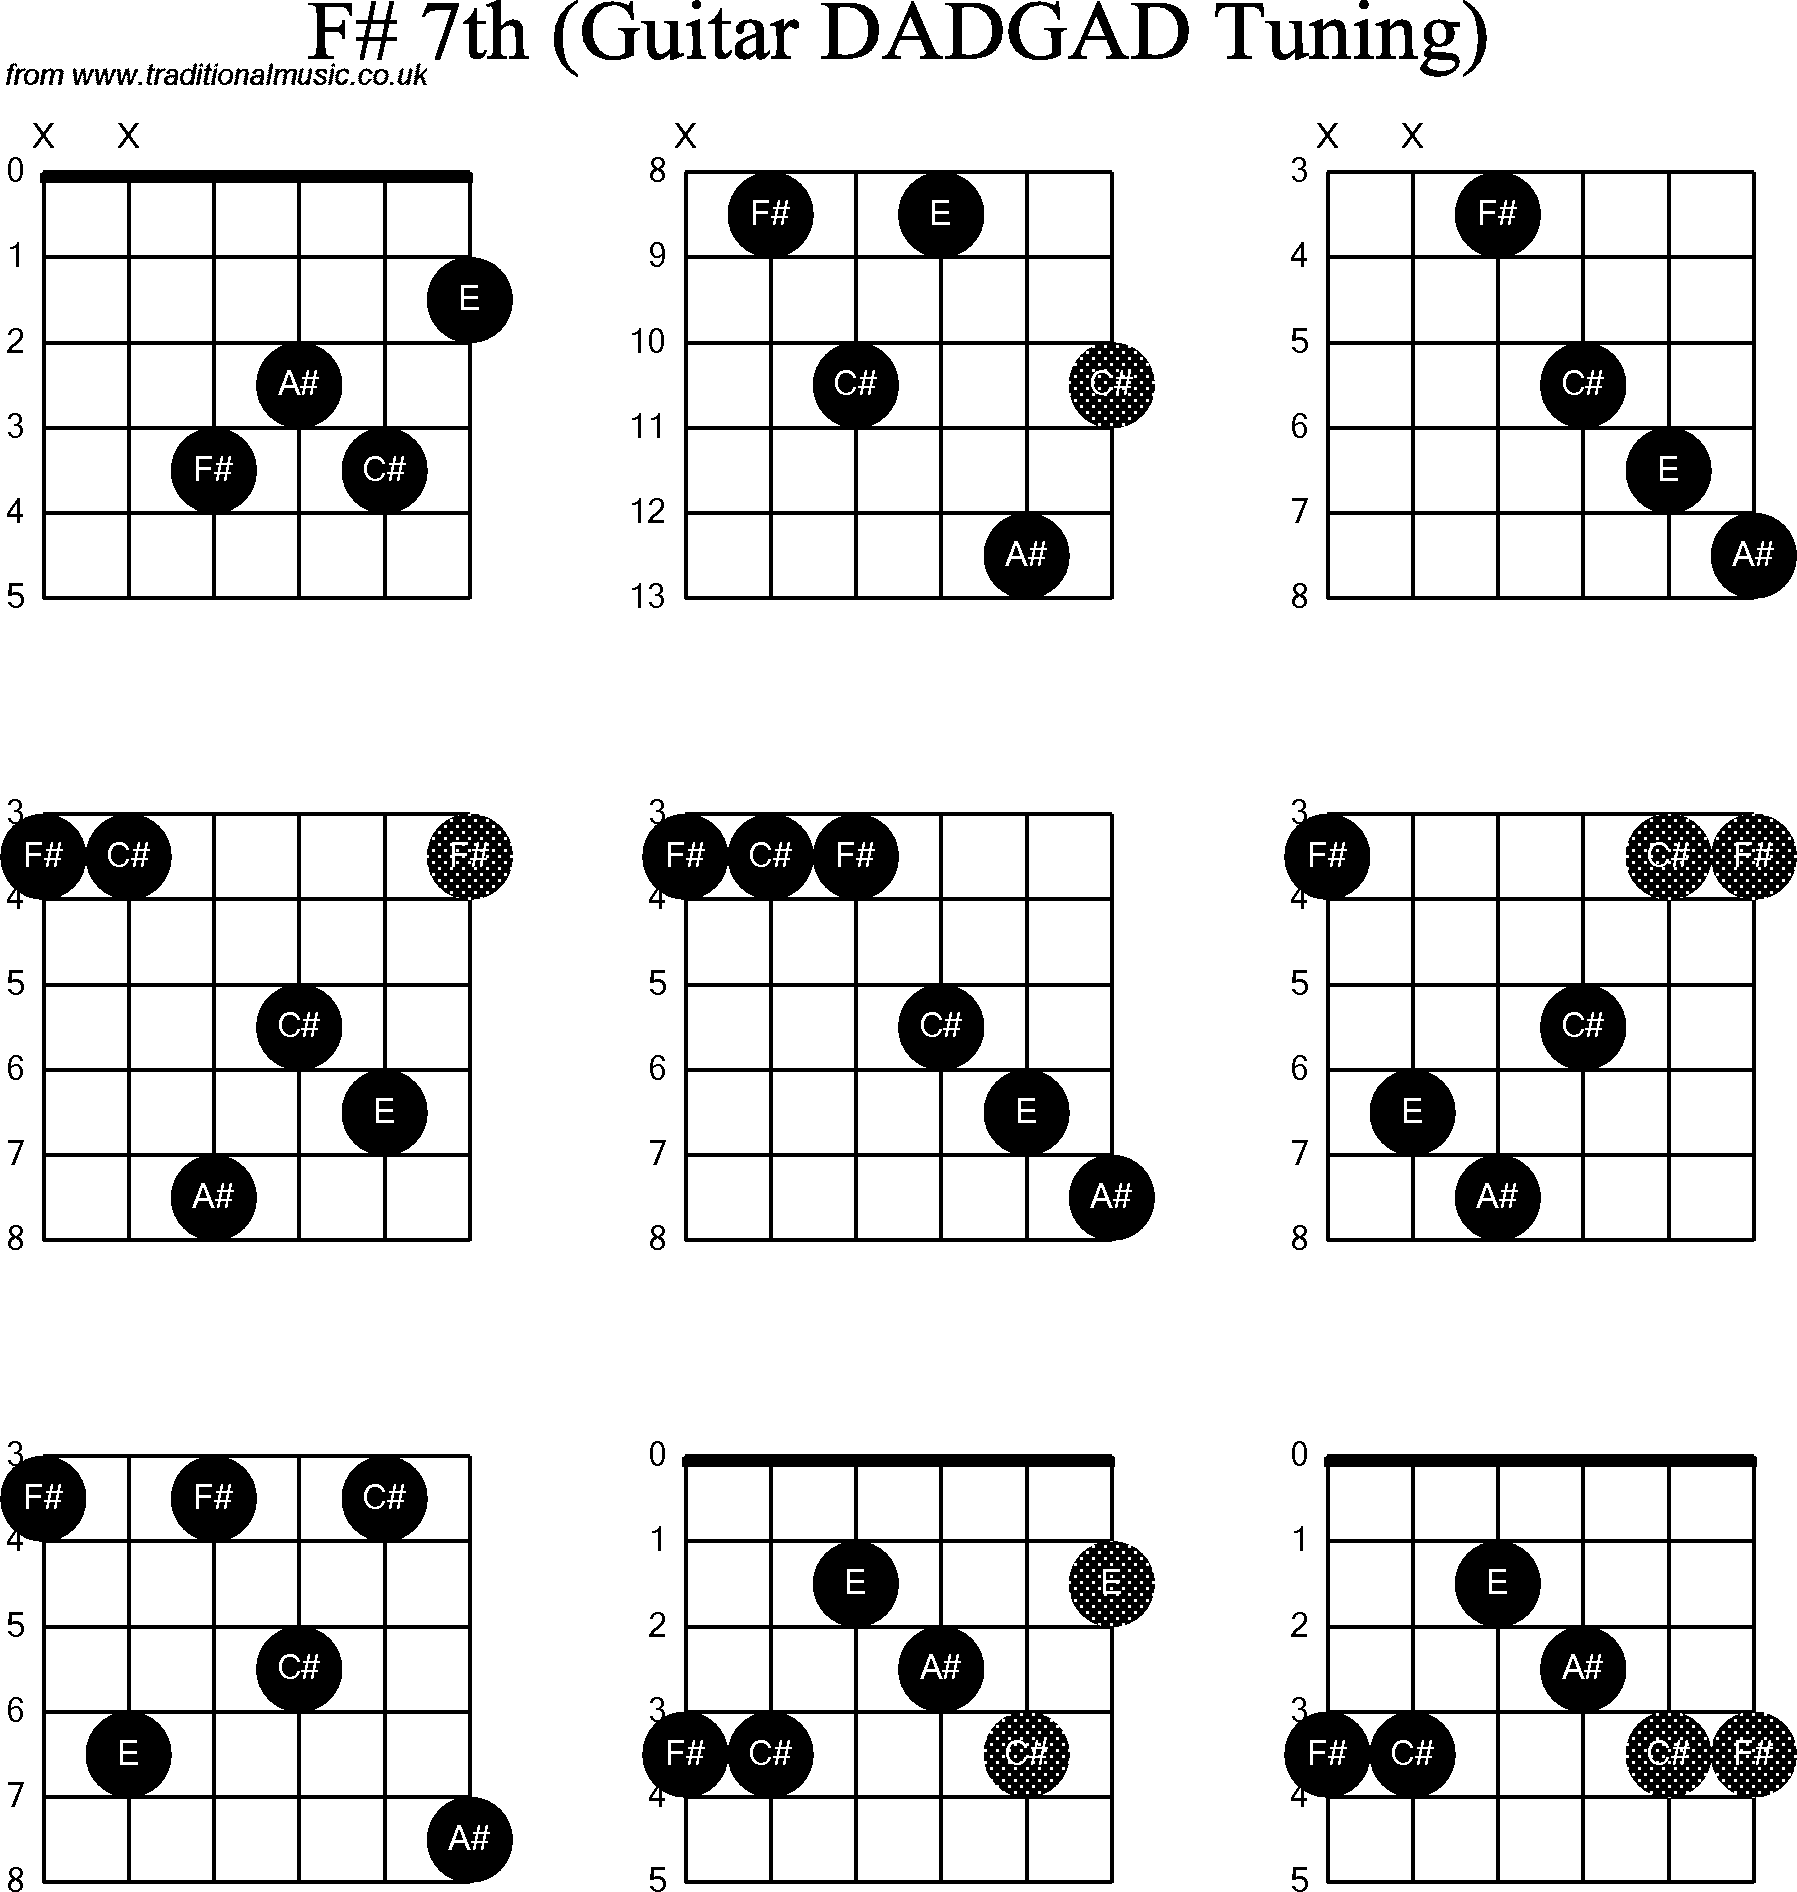 Chord Diagrams for D Modal Guitar(DADGAD), F Sharp7th